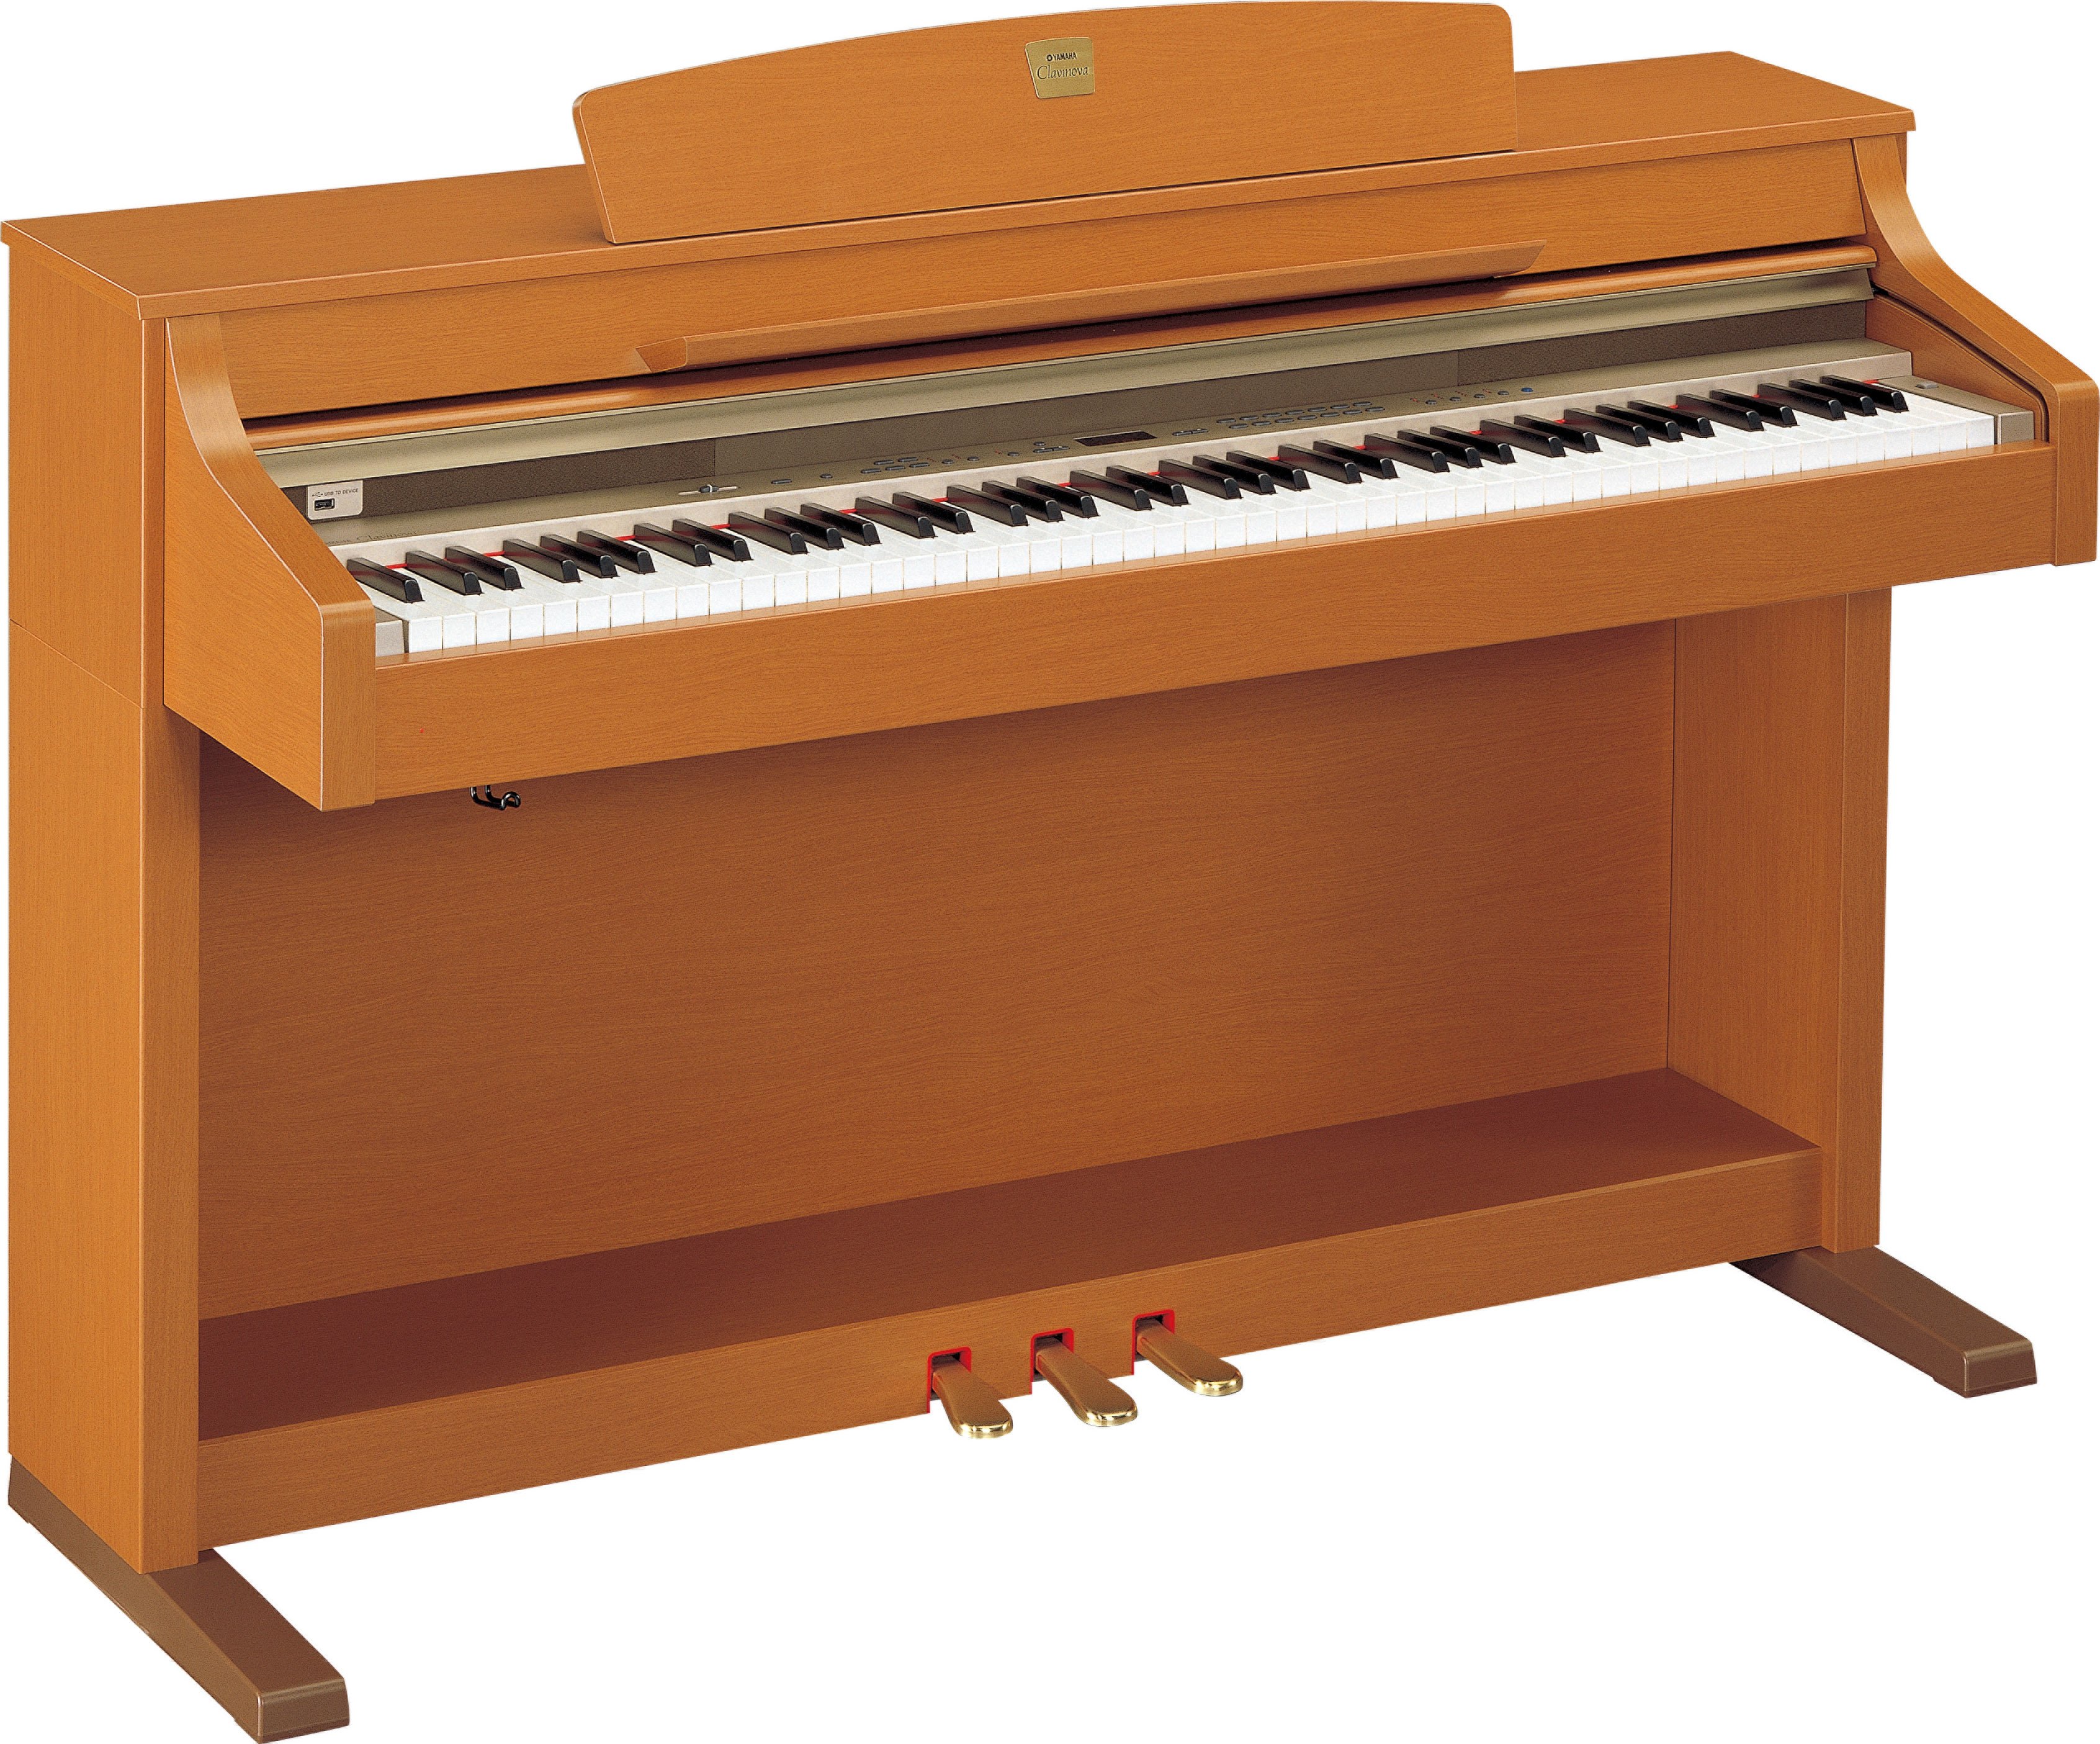 【大阪買い】ヤマハ 電子ピアノ CLP-330 C クラビノーバ 椅子付き YAMAHA 音 器 鍵盤 16N01861 ヤマハ